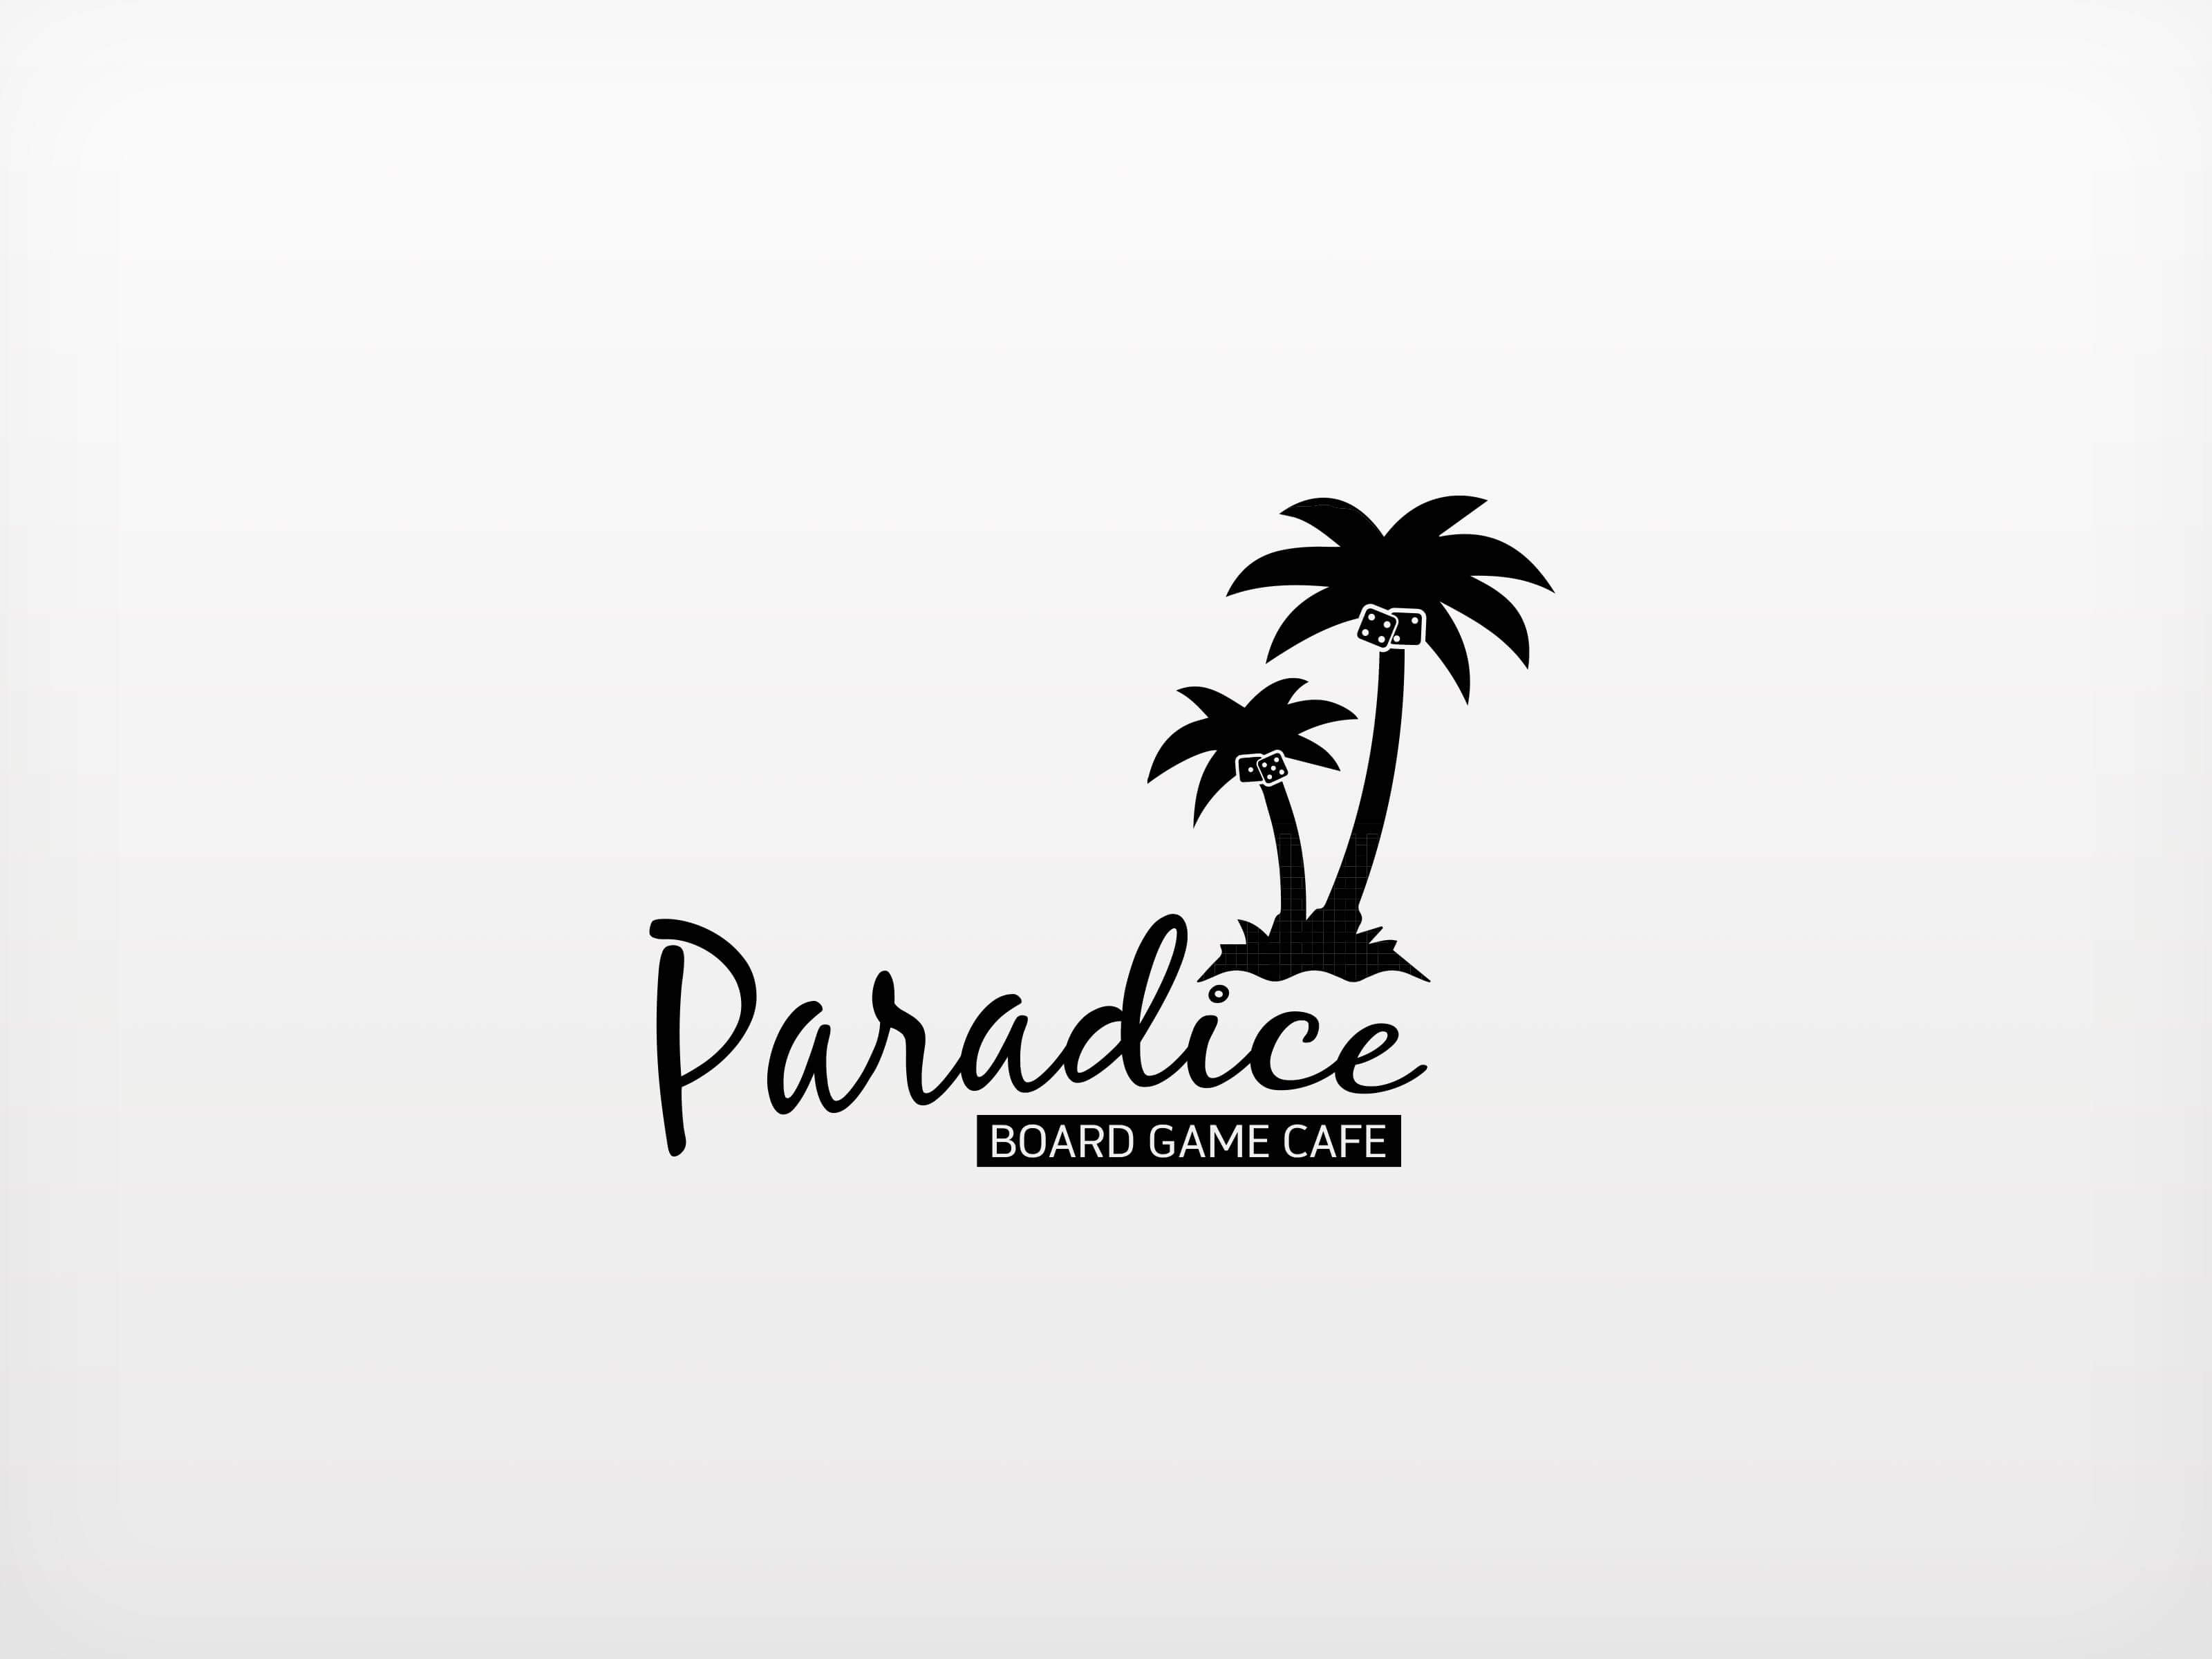 Paradice_Black-optimised